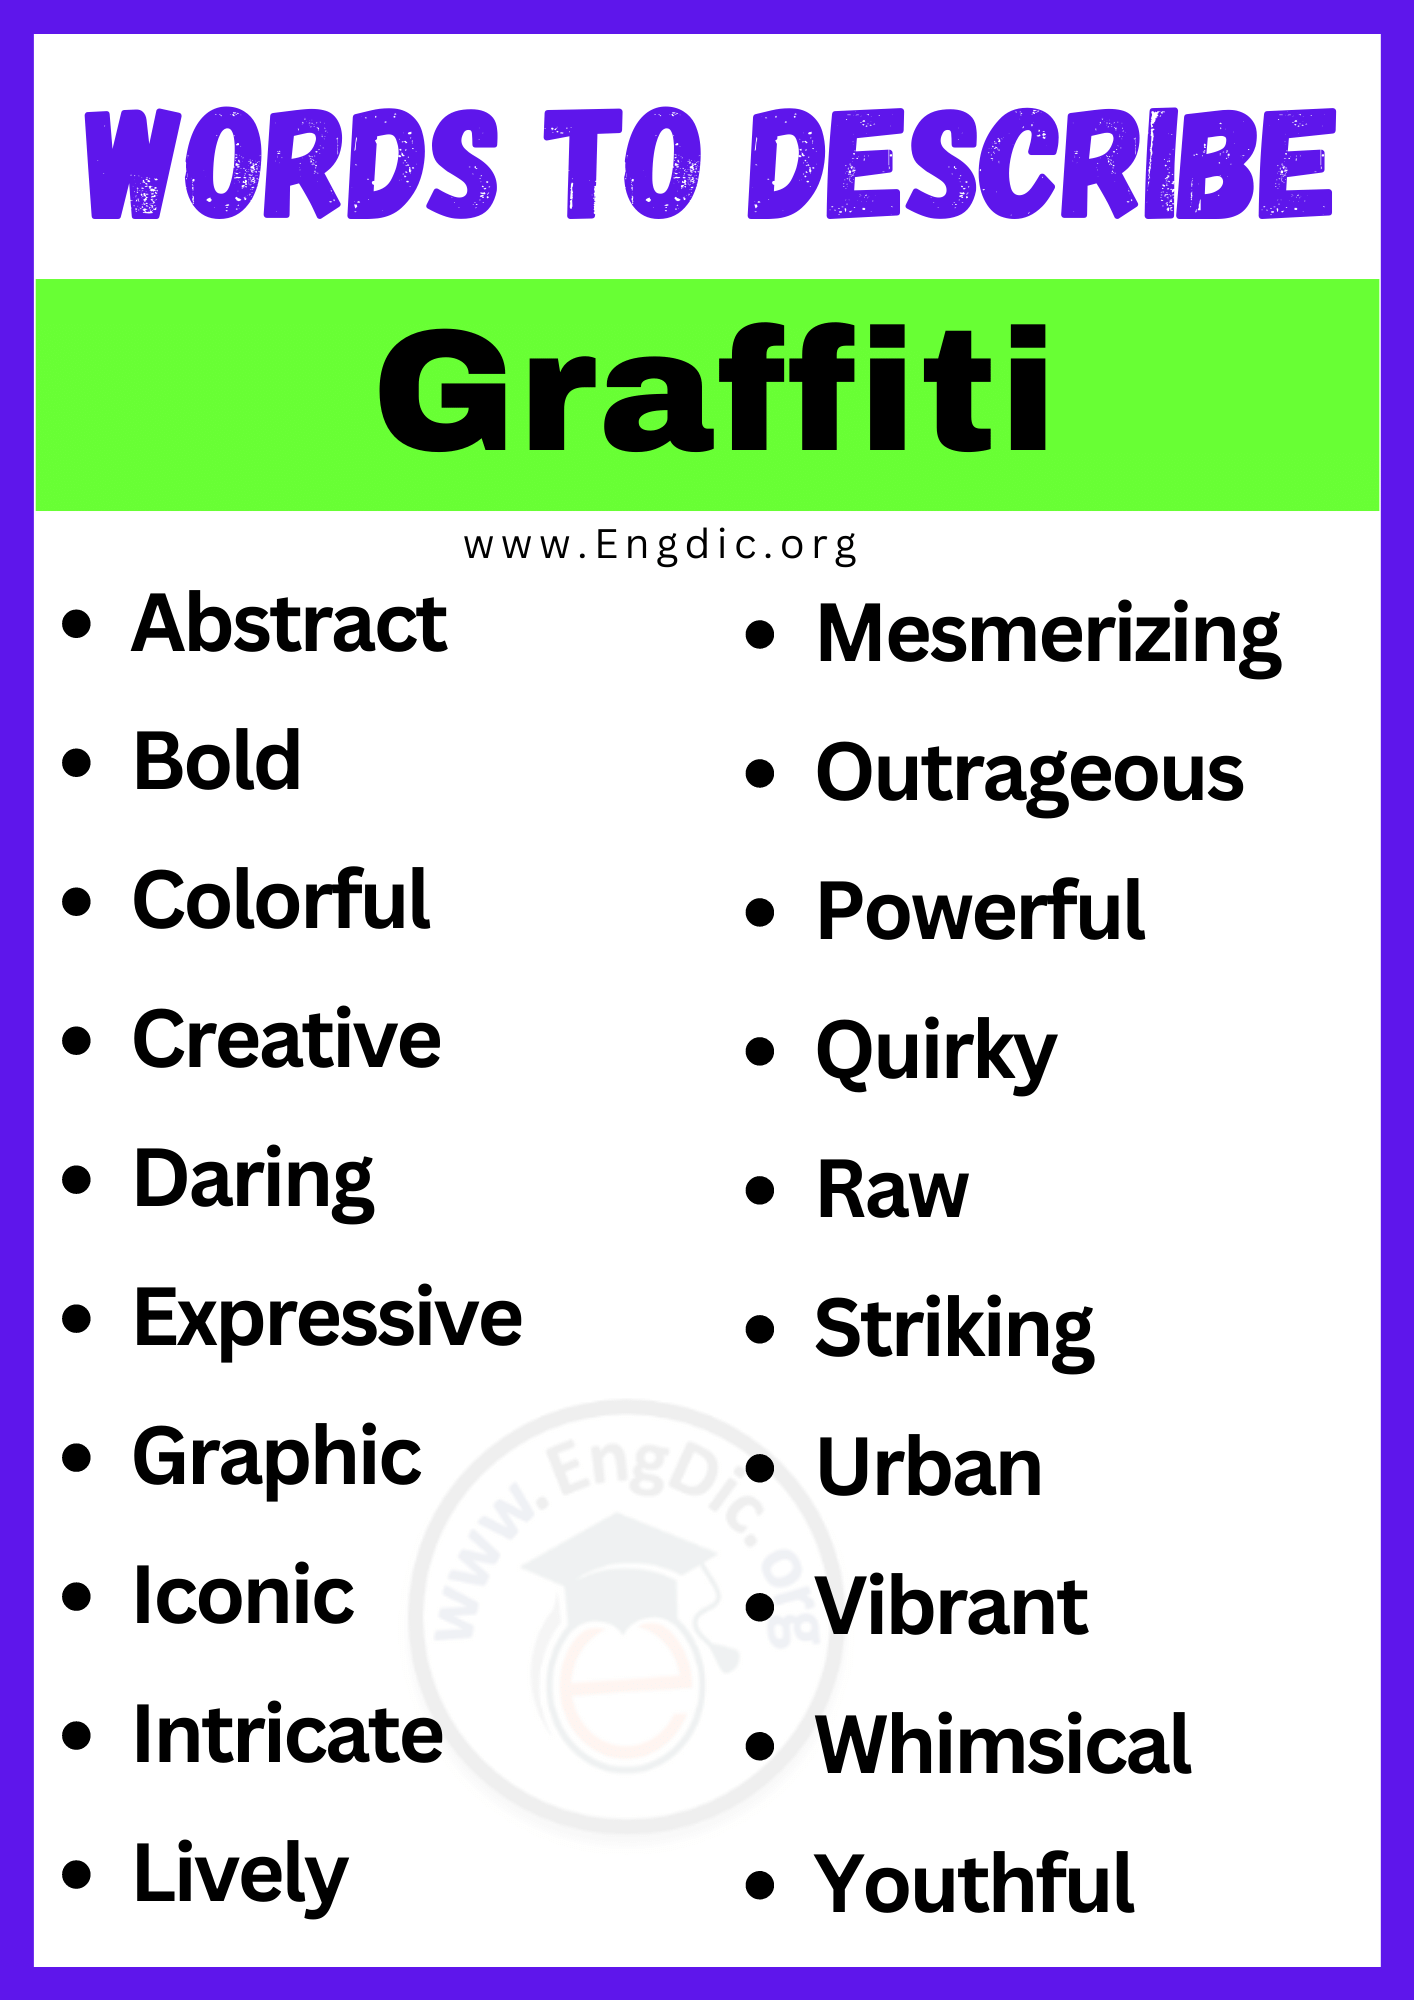 Words to Describe Graffiti